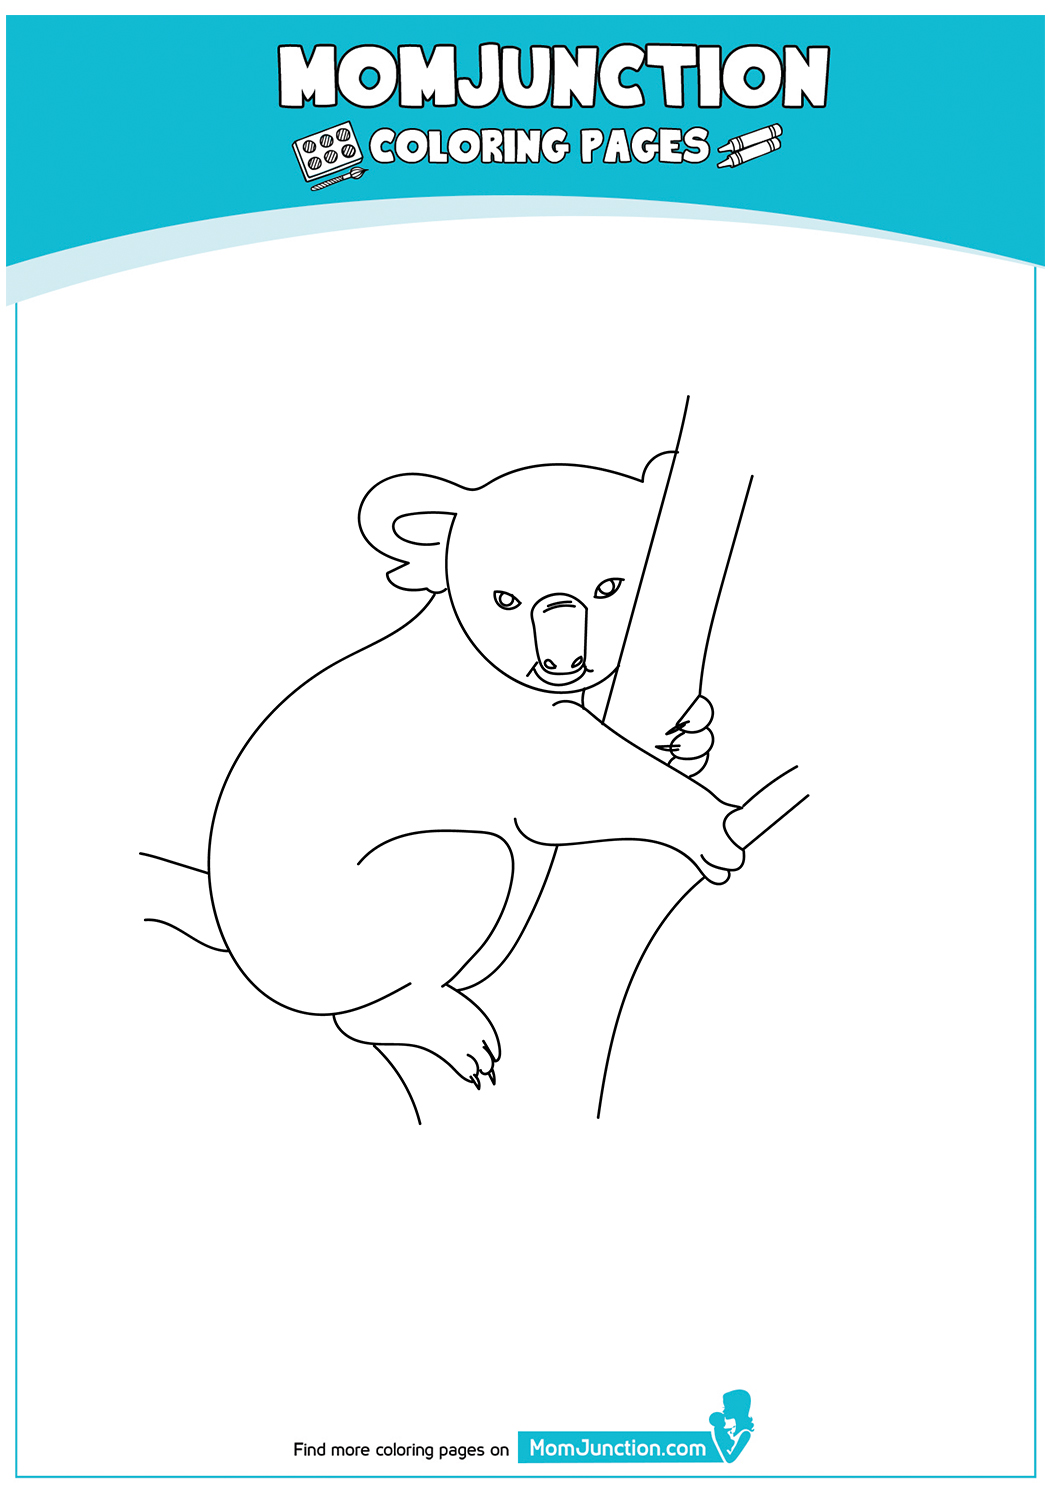 Koala-Sitting-On-Tree-17